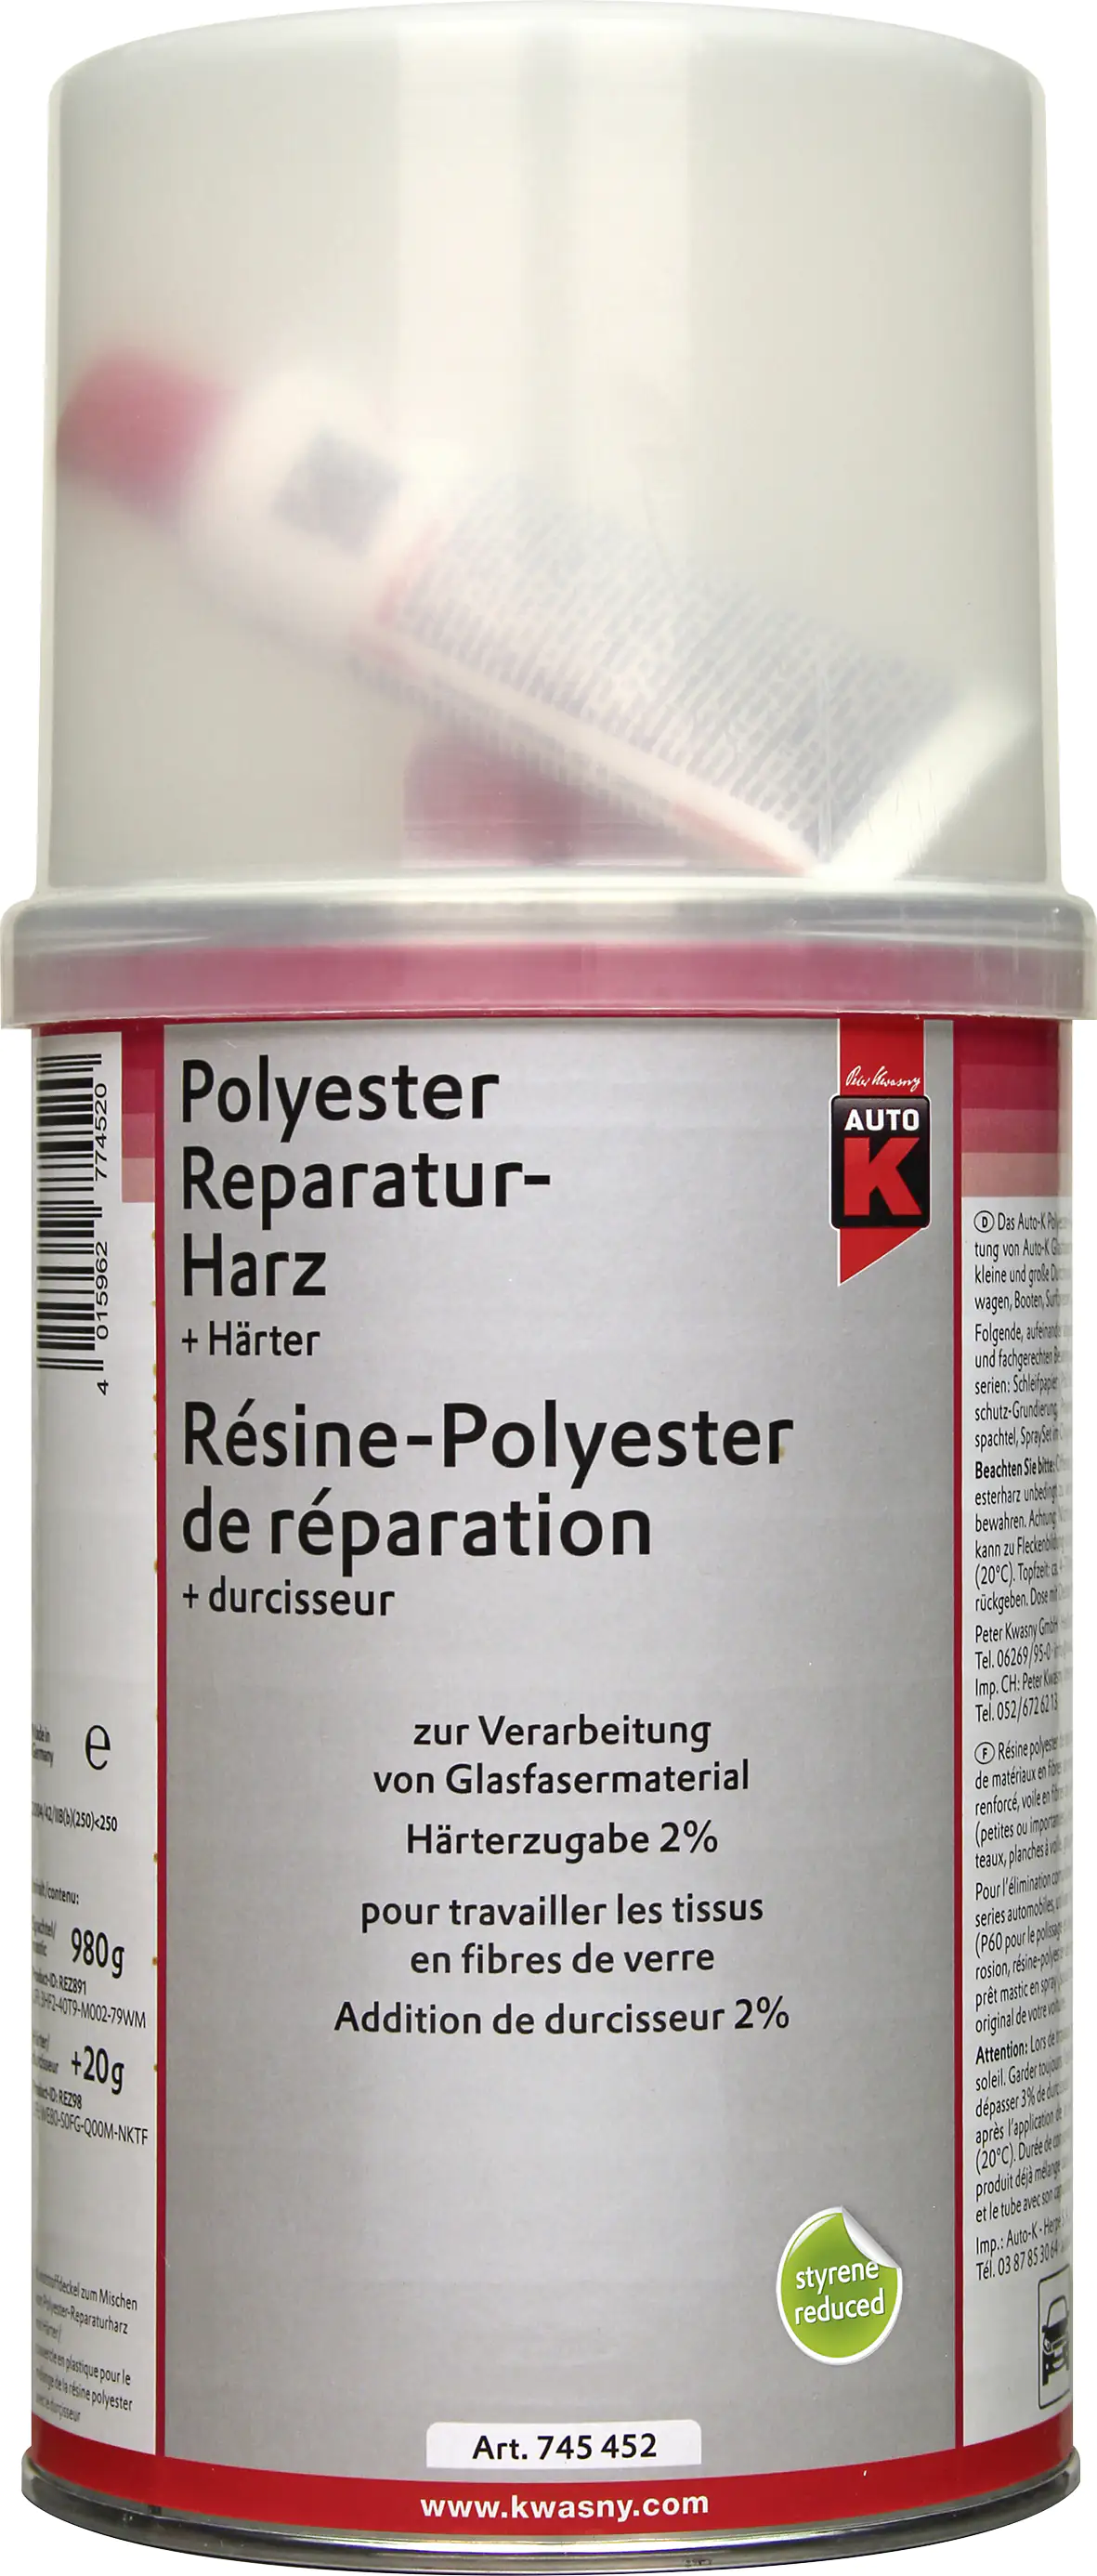 Auto-K Polyester Reparaturharz + Härter 1000g kaufen